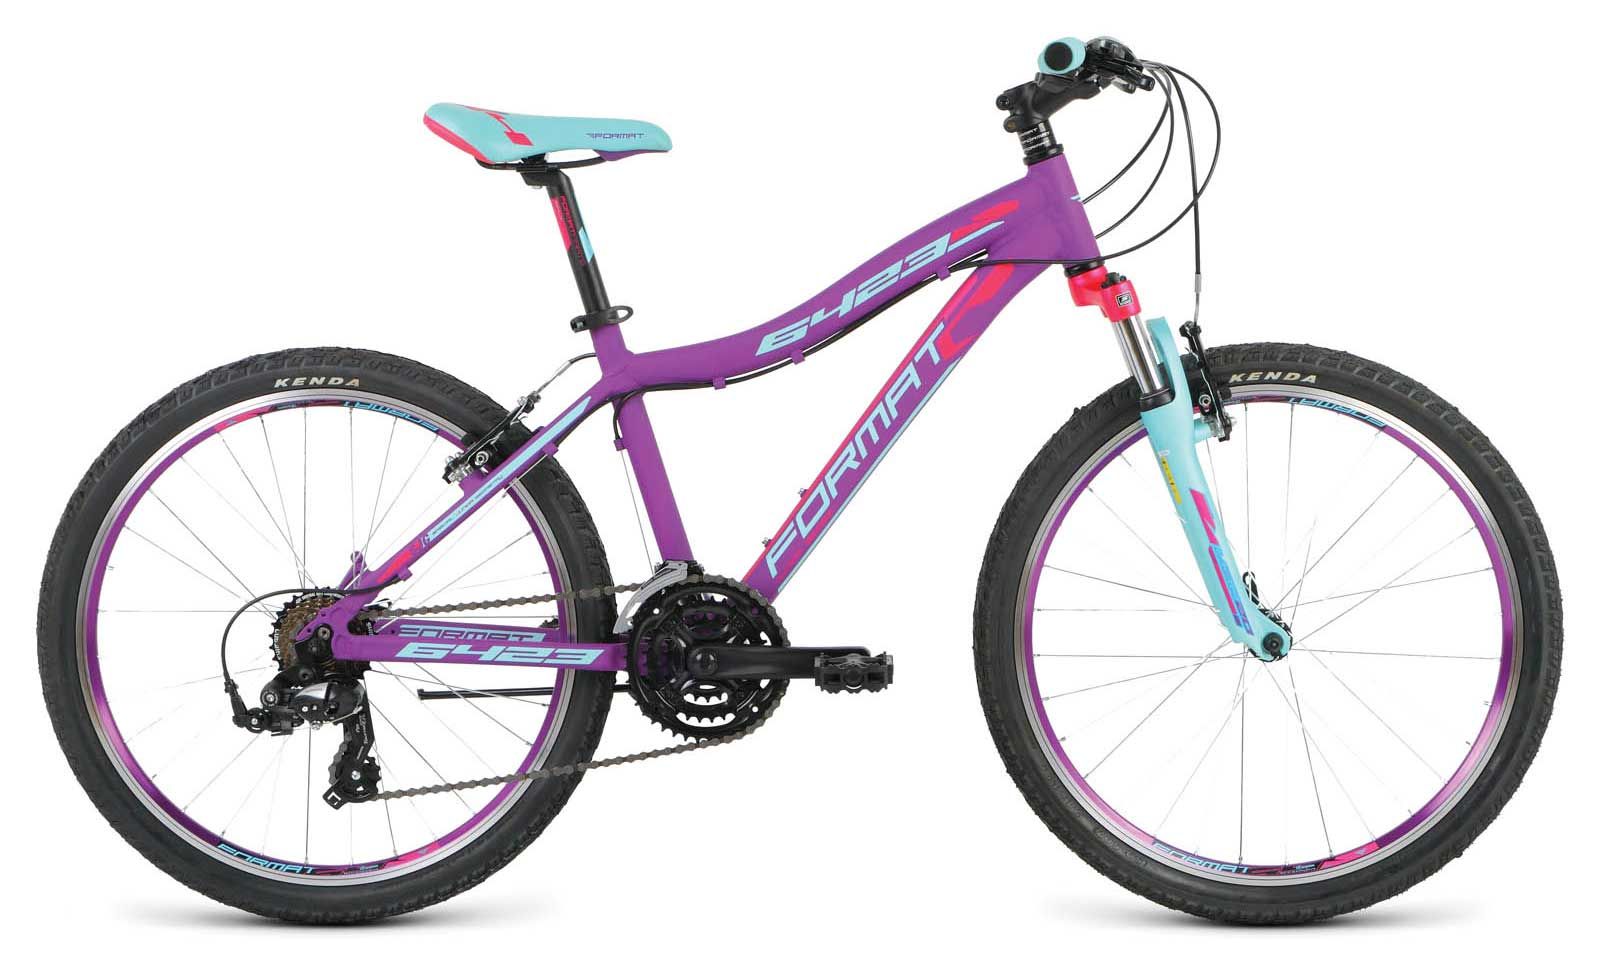  Отзывы о Детском велосипеде Format 6423 girl 2016